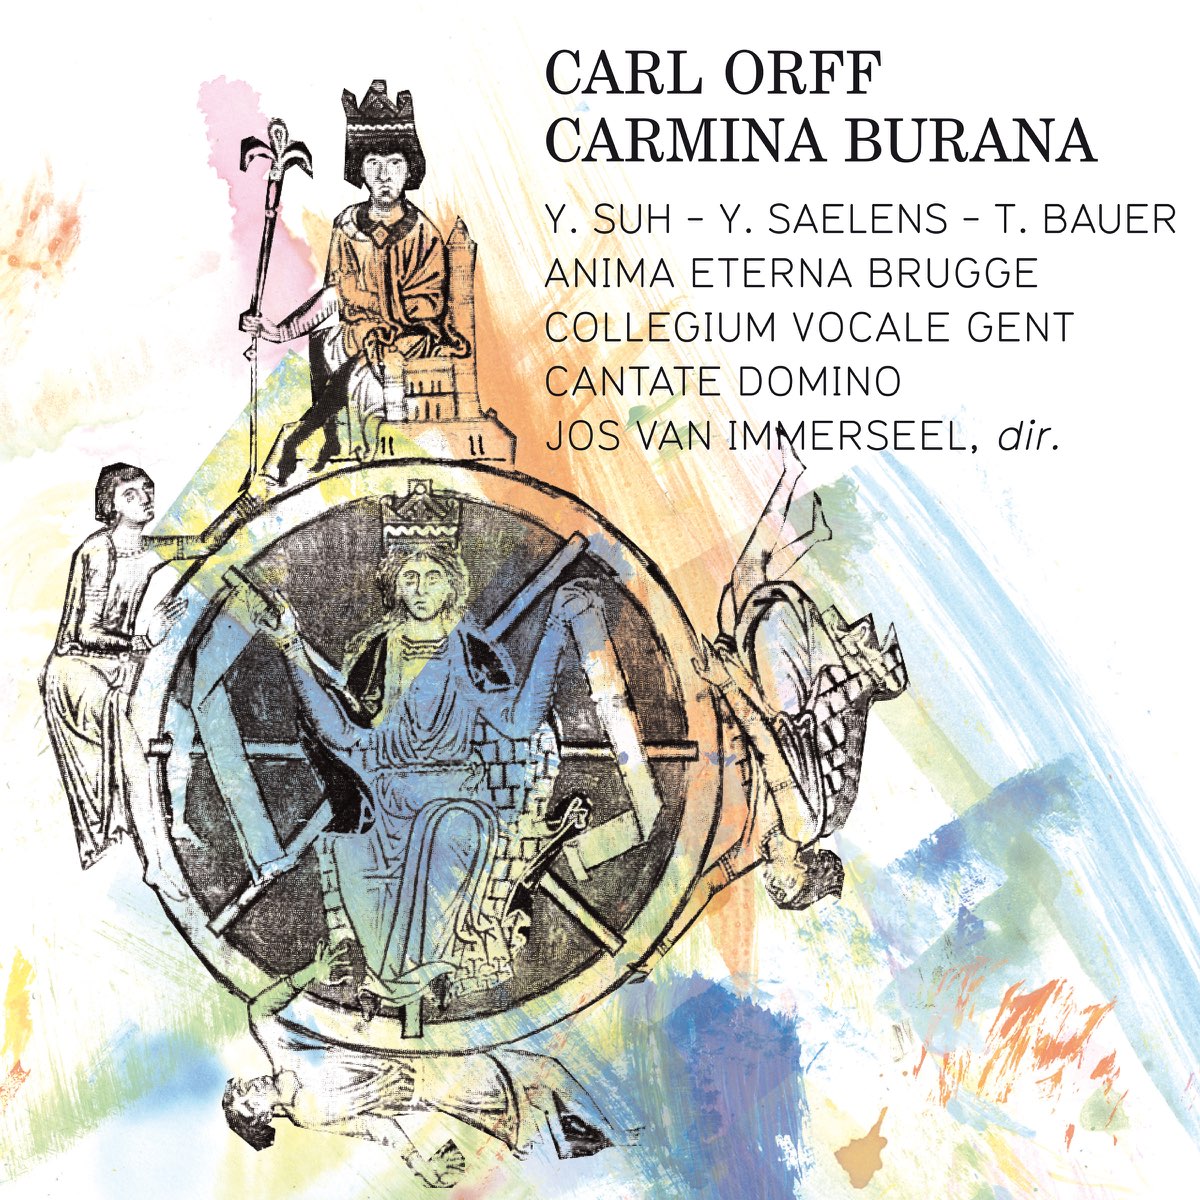 Anima Eterna Brugge コレギウム ヴォカーレ ヘント ジョス ファン インマゼールの Orff Carmina Burana Cantiones Profanae をapple Musicで